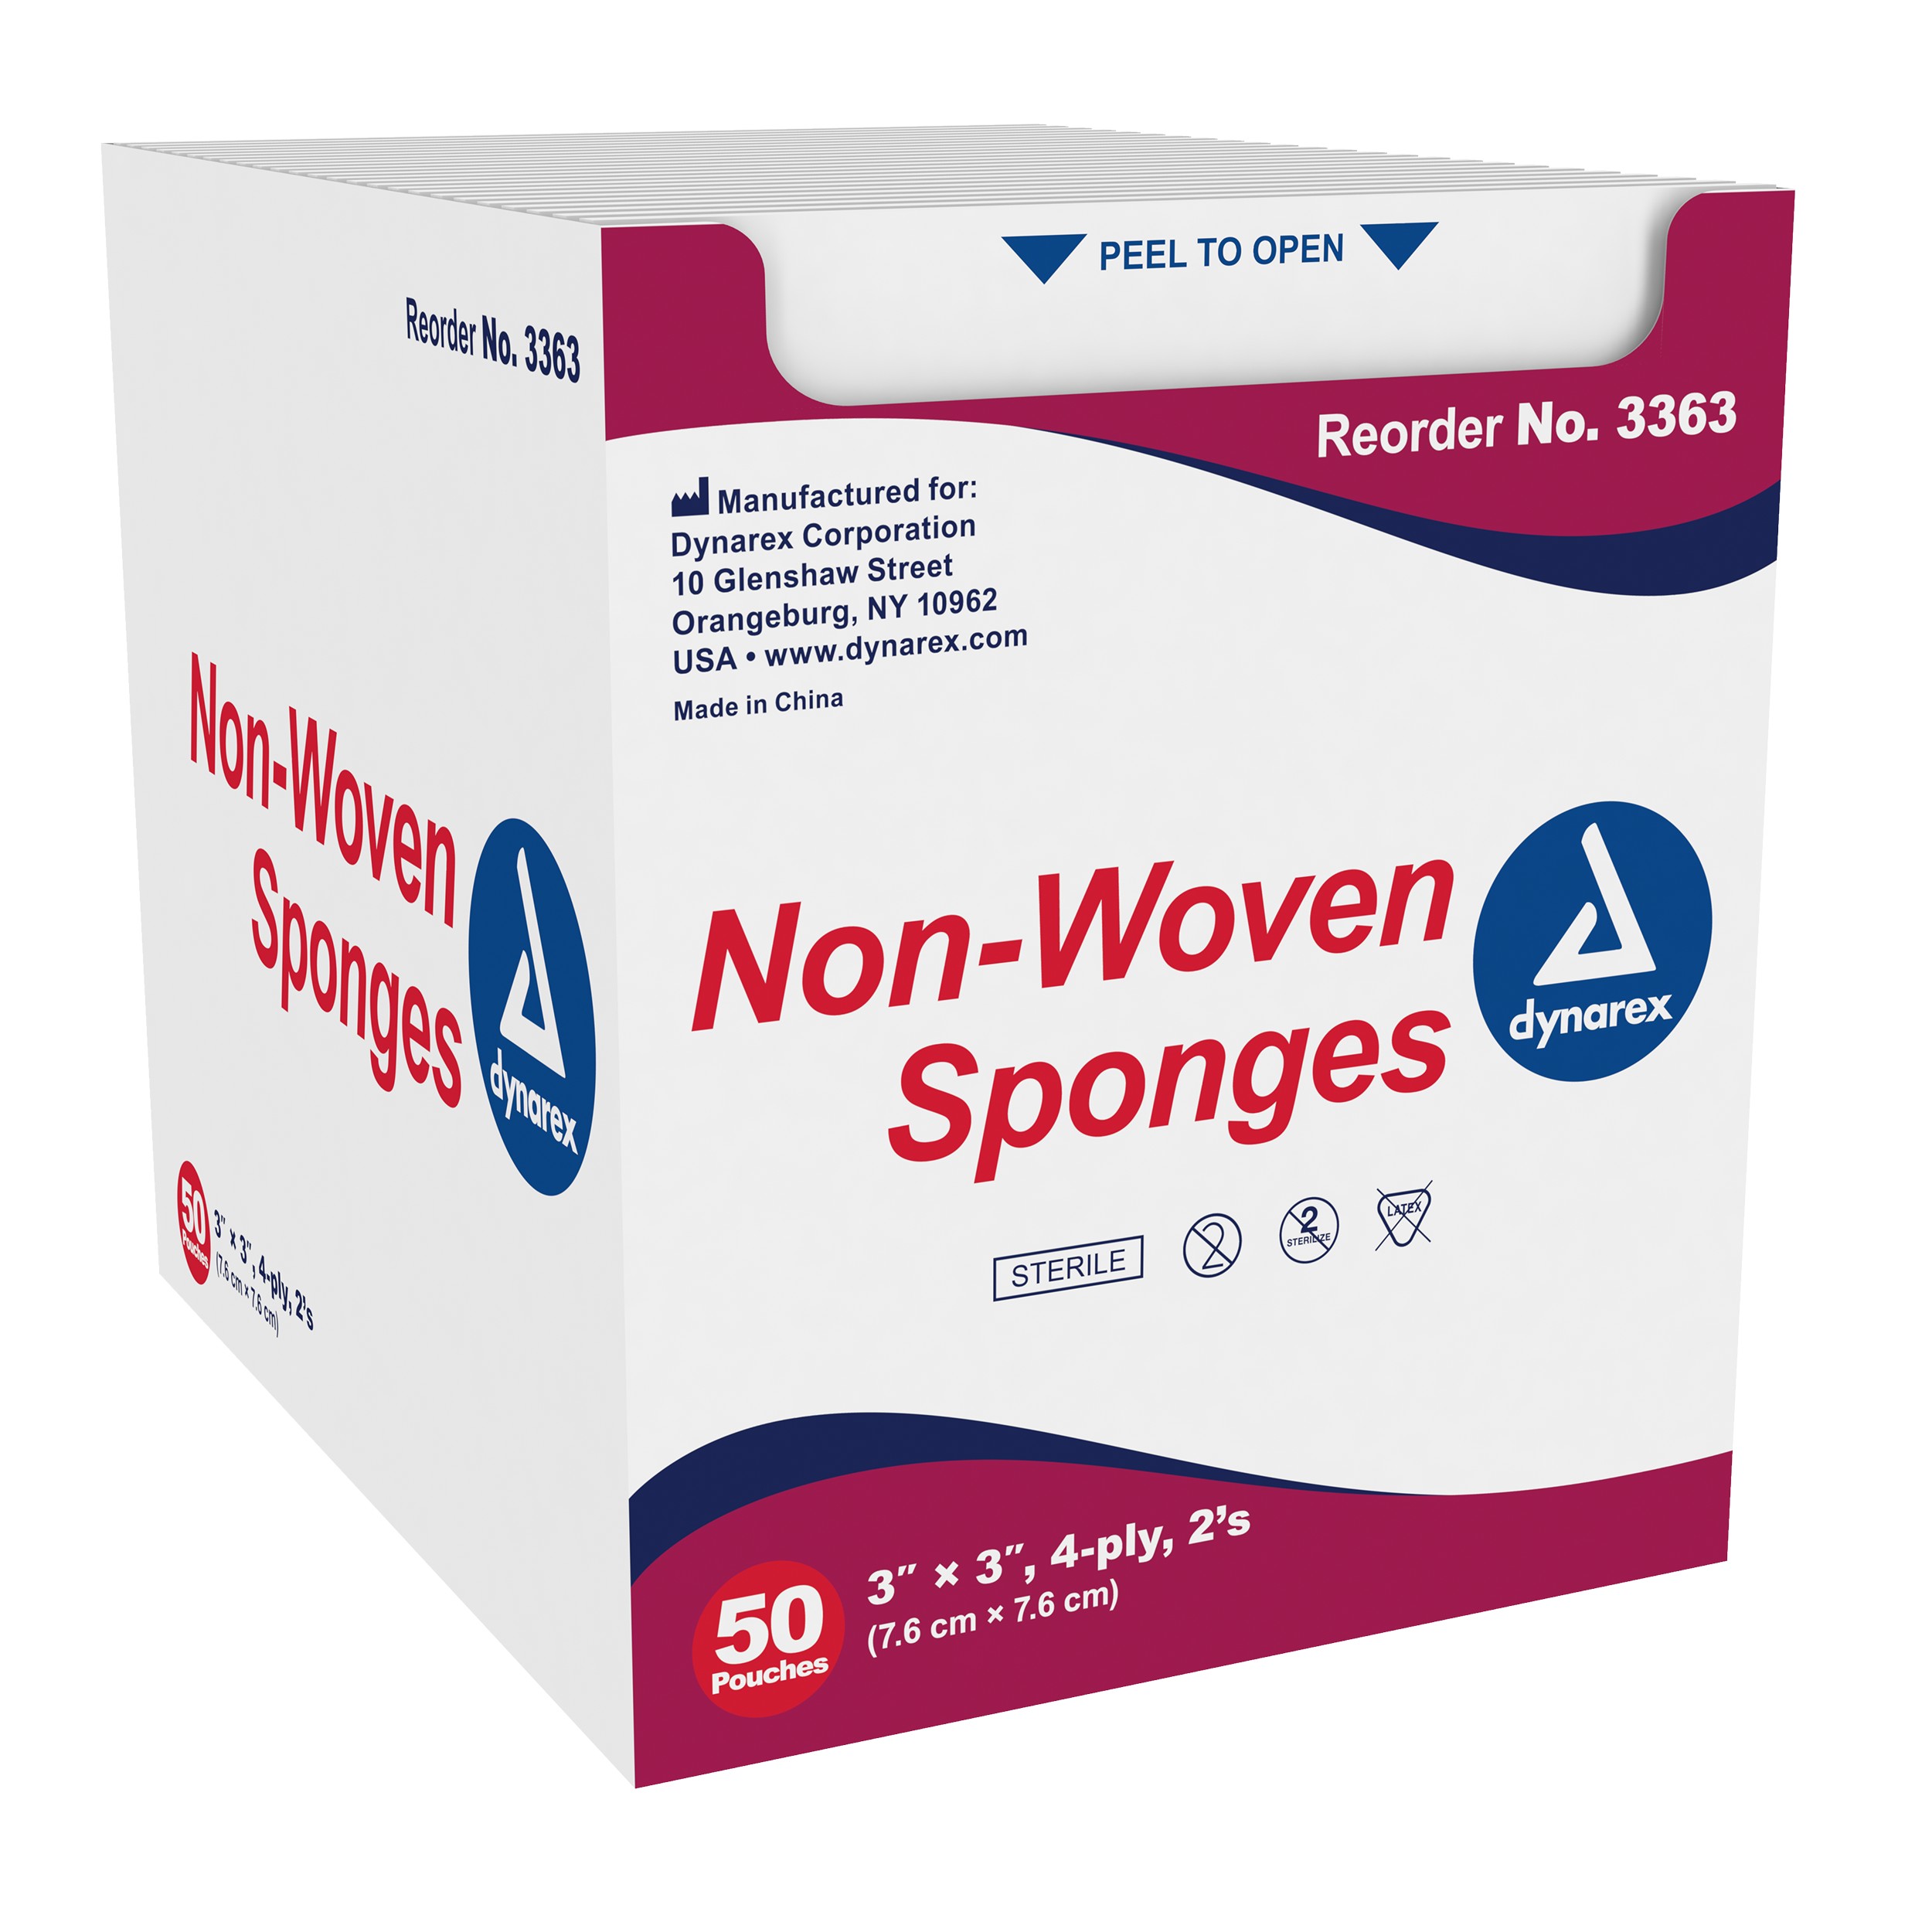 Non-Woven Sponge Sterile 2%27s, 3